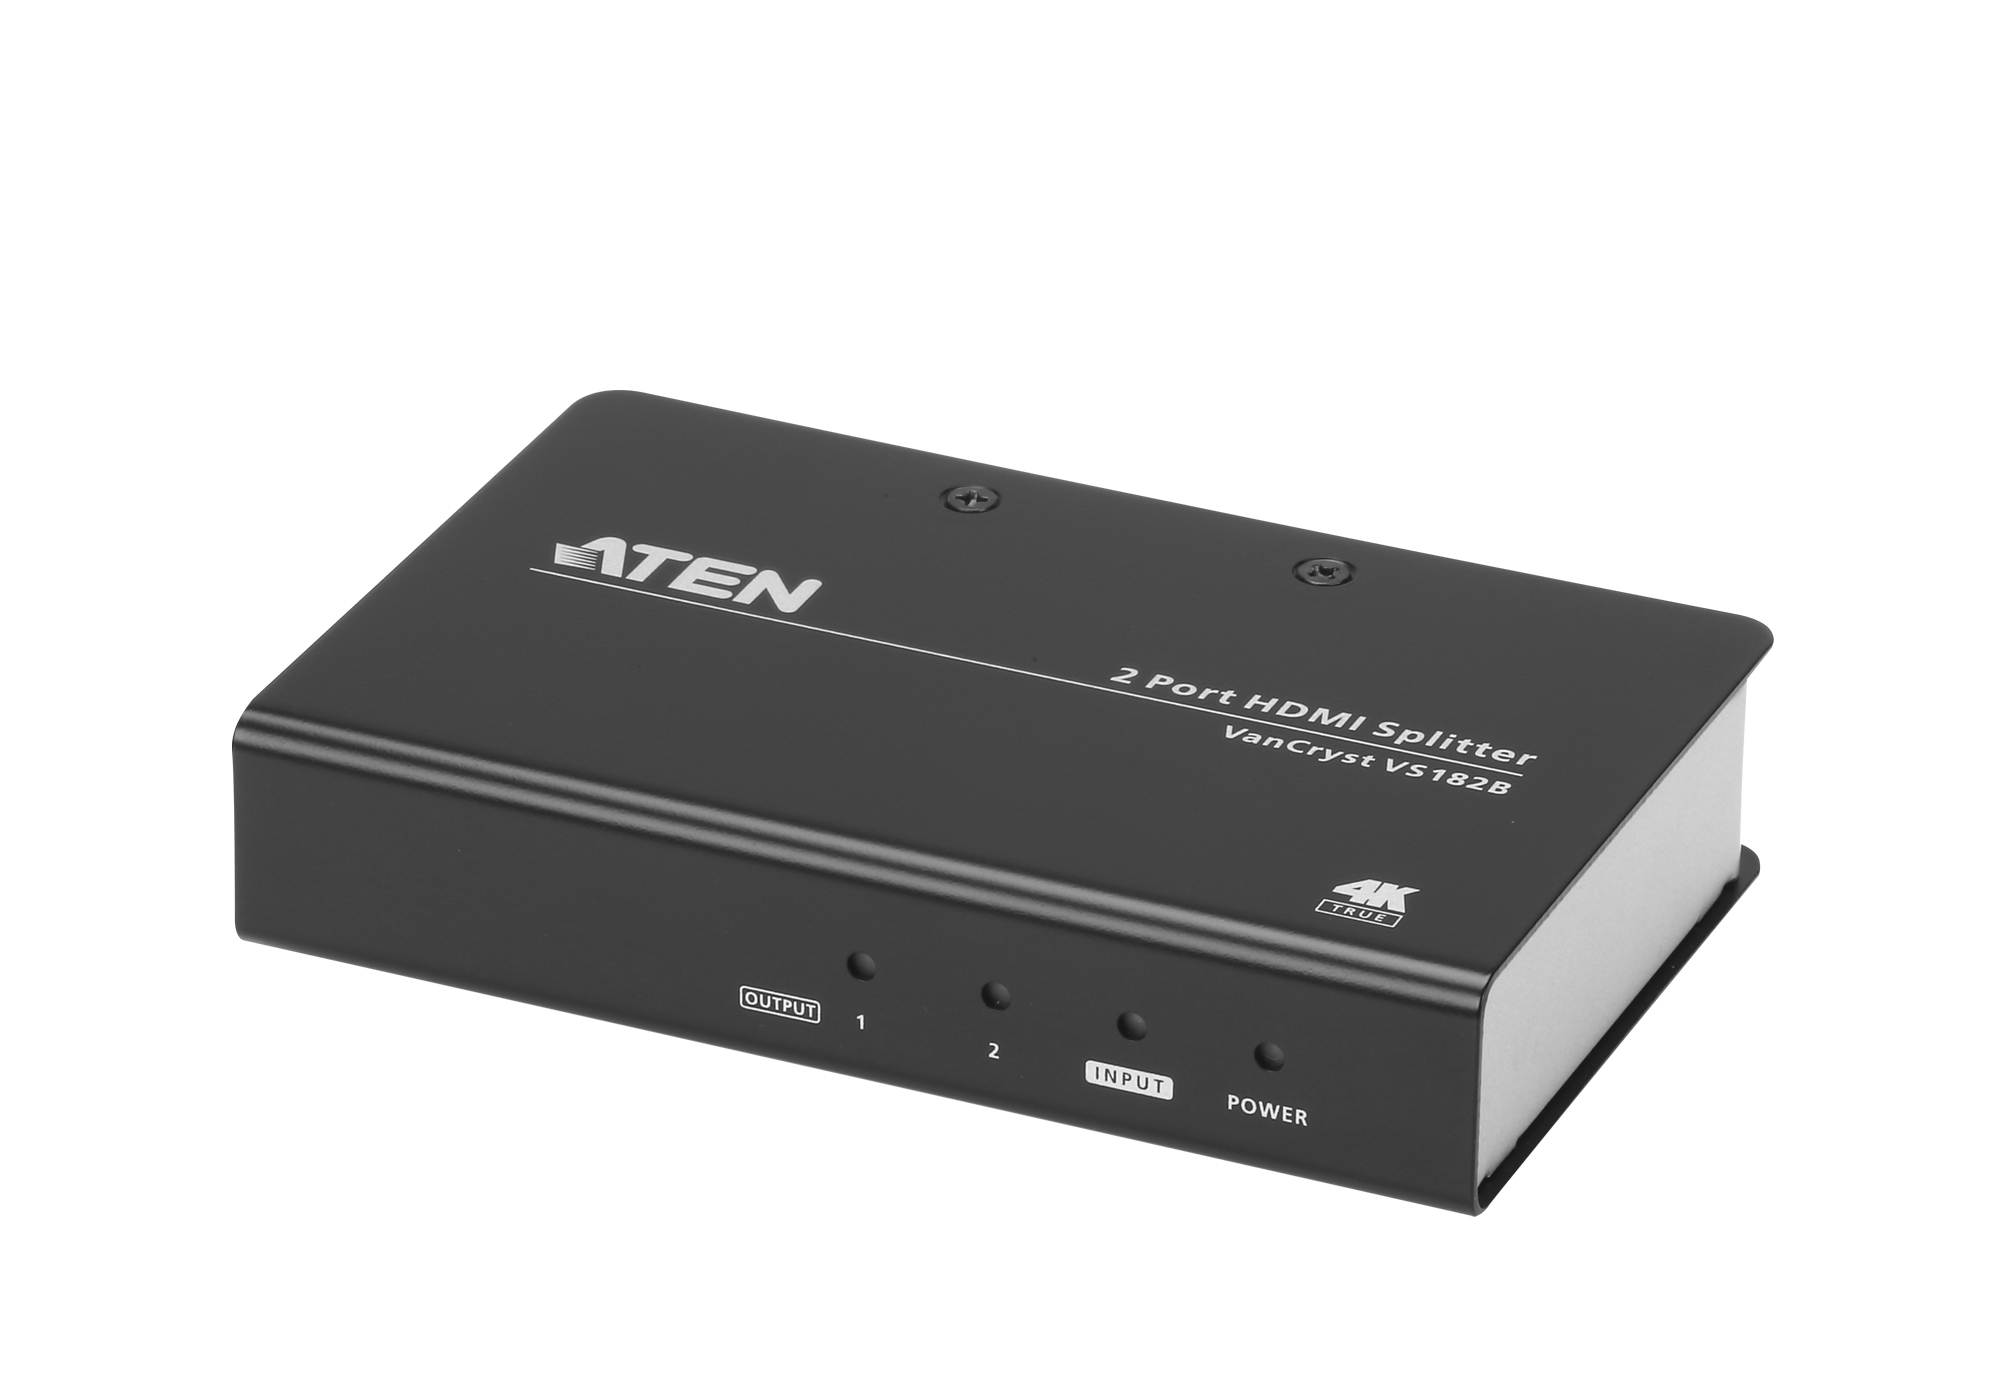 Aten Video Splitter, HDMI, 1xInput, 2xOutput, 4K/2K